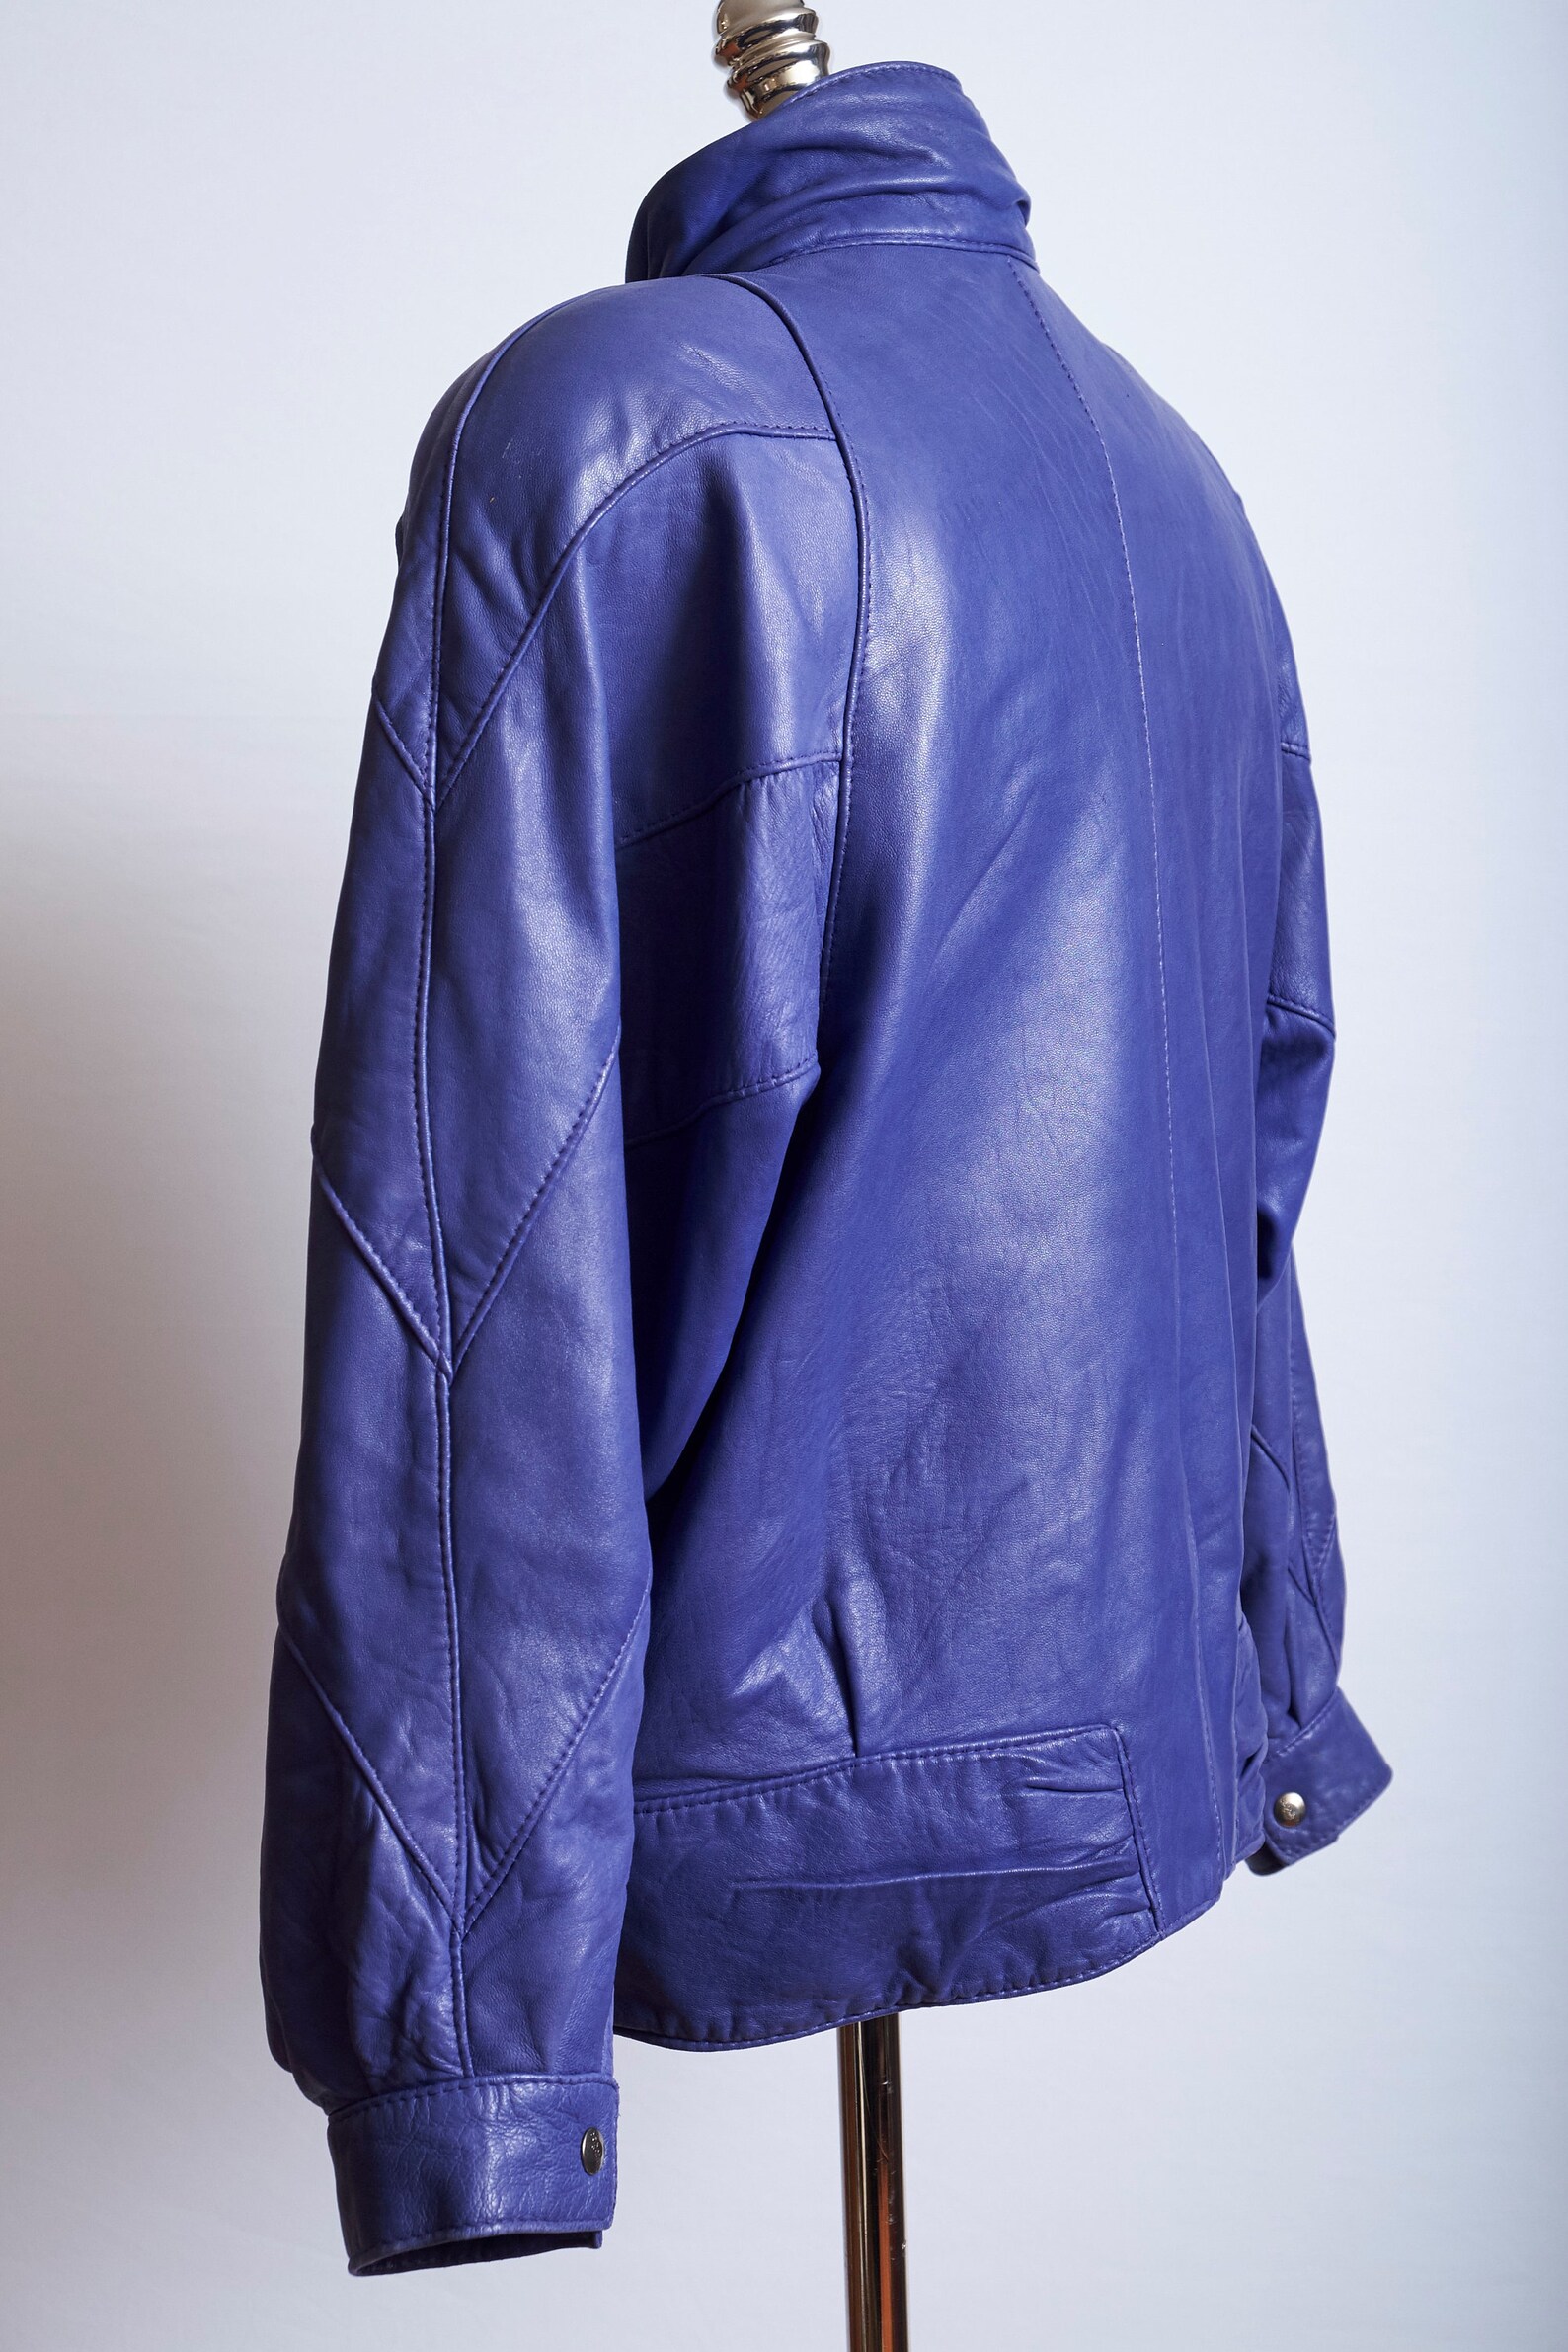 Vintage 80s blue leather bomber jacket oversized long sleeve | Etsy